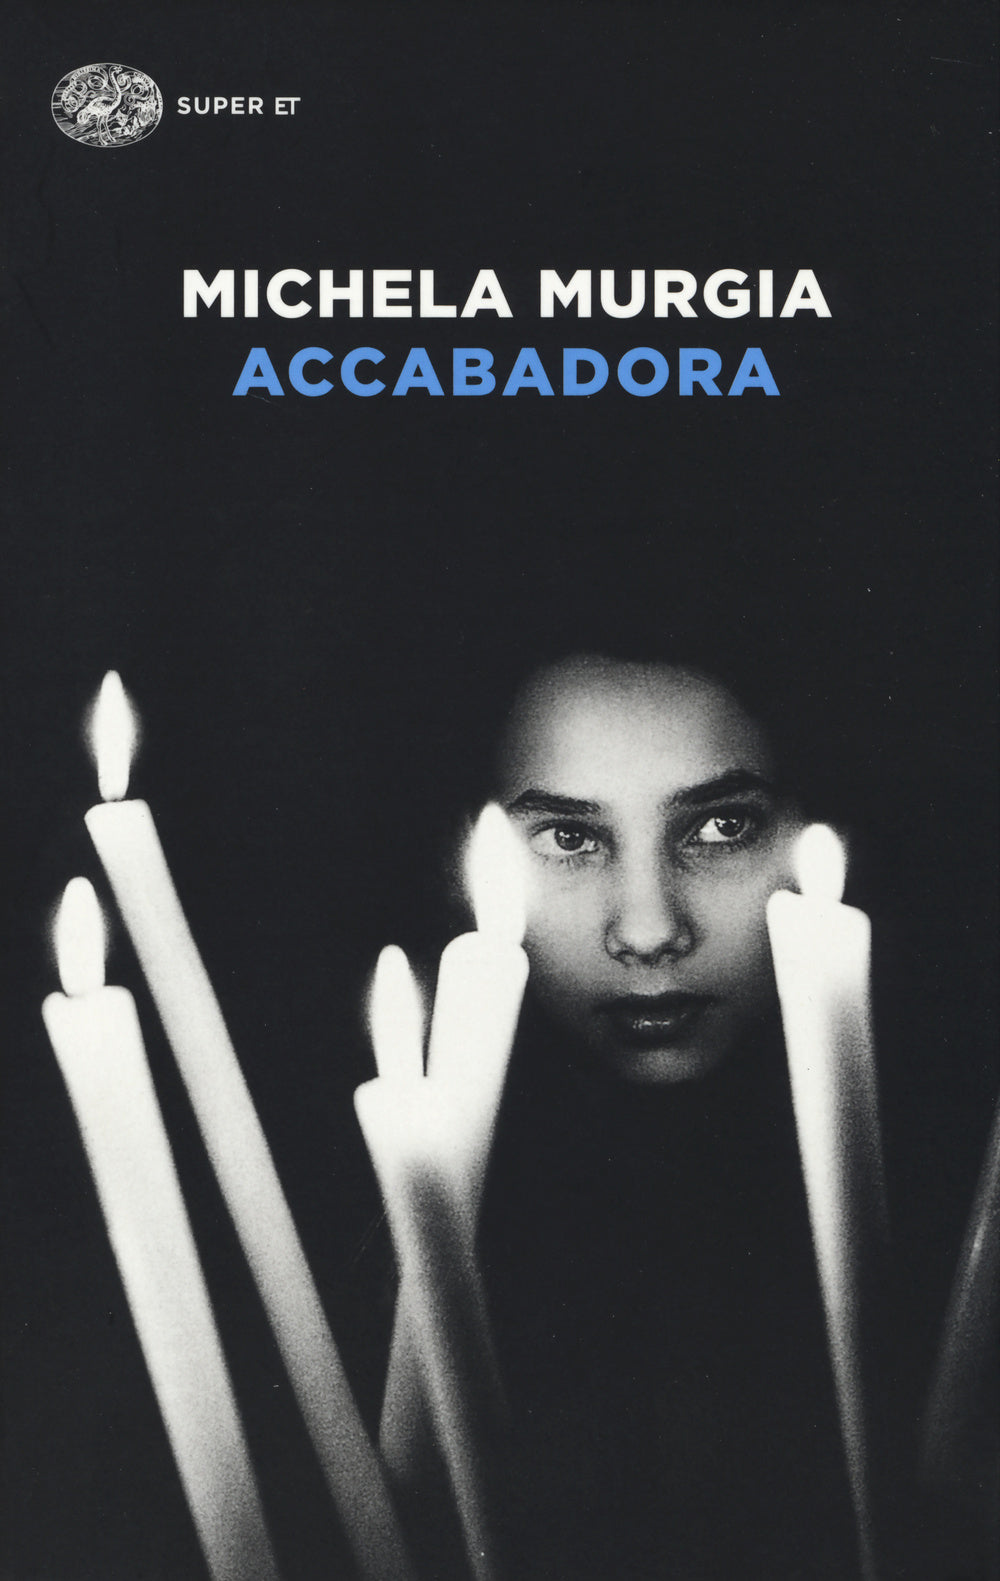 Michela Murgia: scopri i libri dell'autrice – Giunti al punto